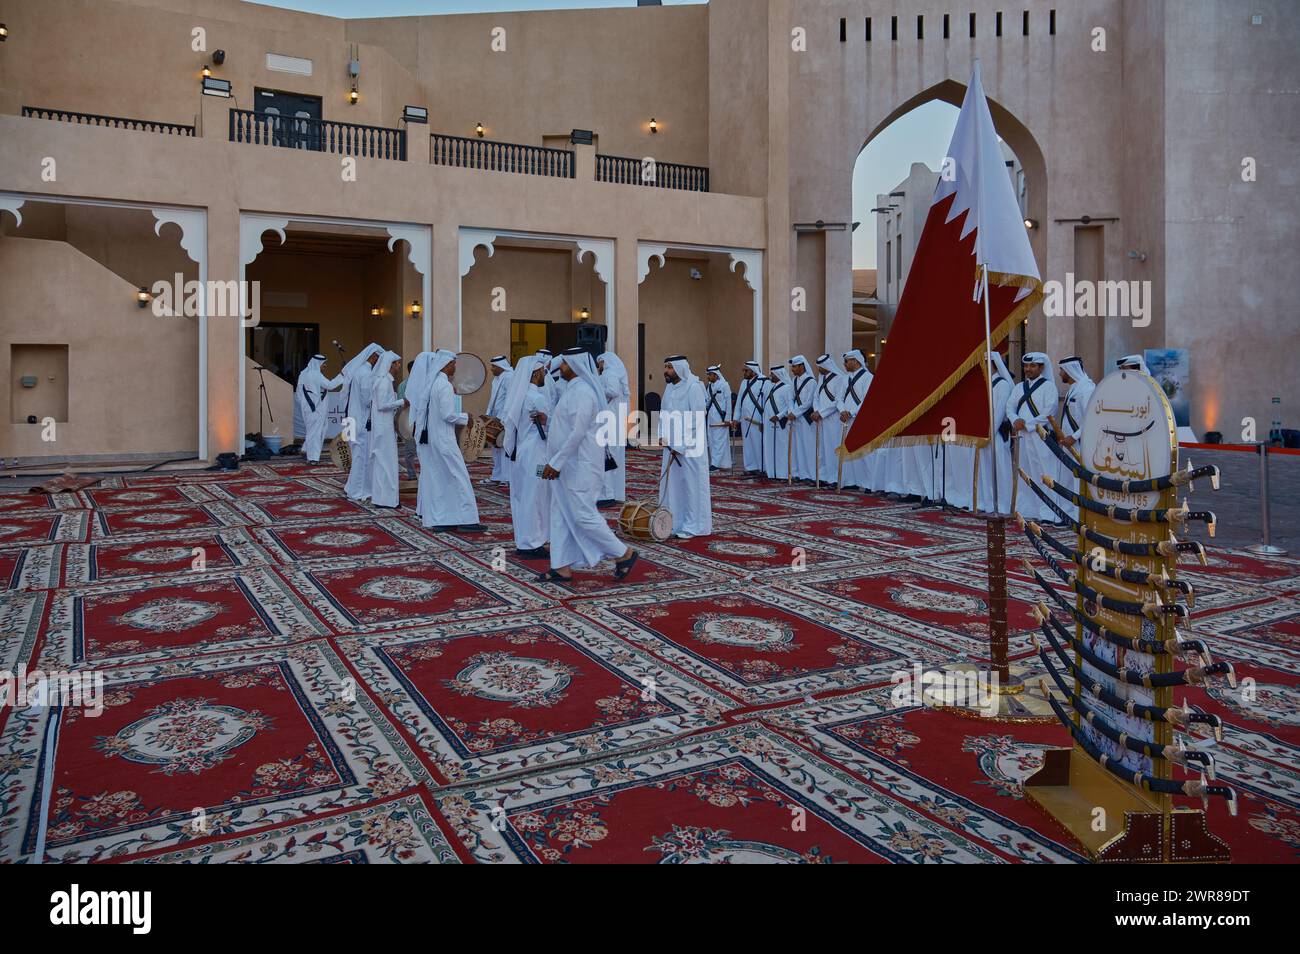 Qatar danse folklorique traditionnelle (danse Ardah) dans le village culturel Katara, Doha- Qatar lors de la Coupe d'Asie de l'AFC 2023 tenue au Qatar. Photo de l'après-midi. Banque D'Images